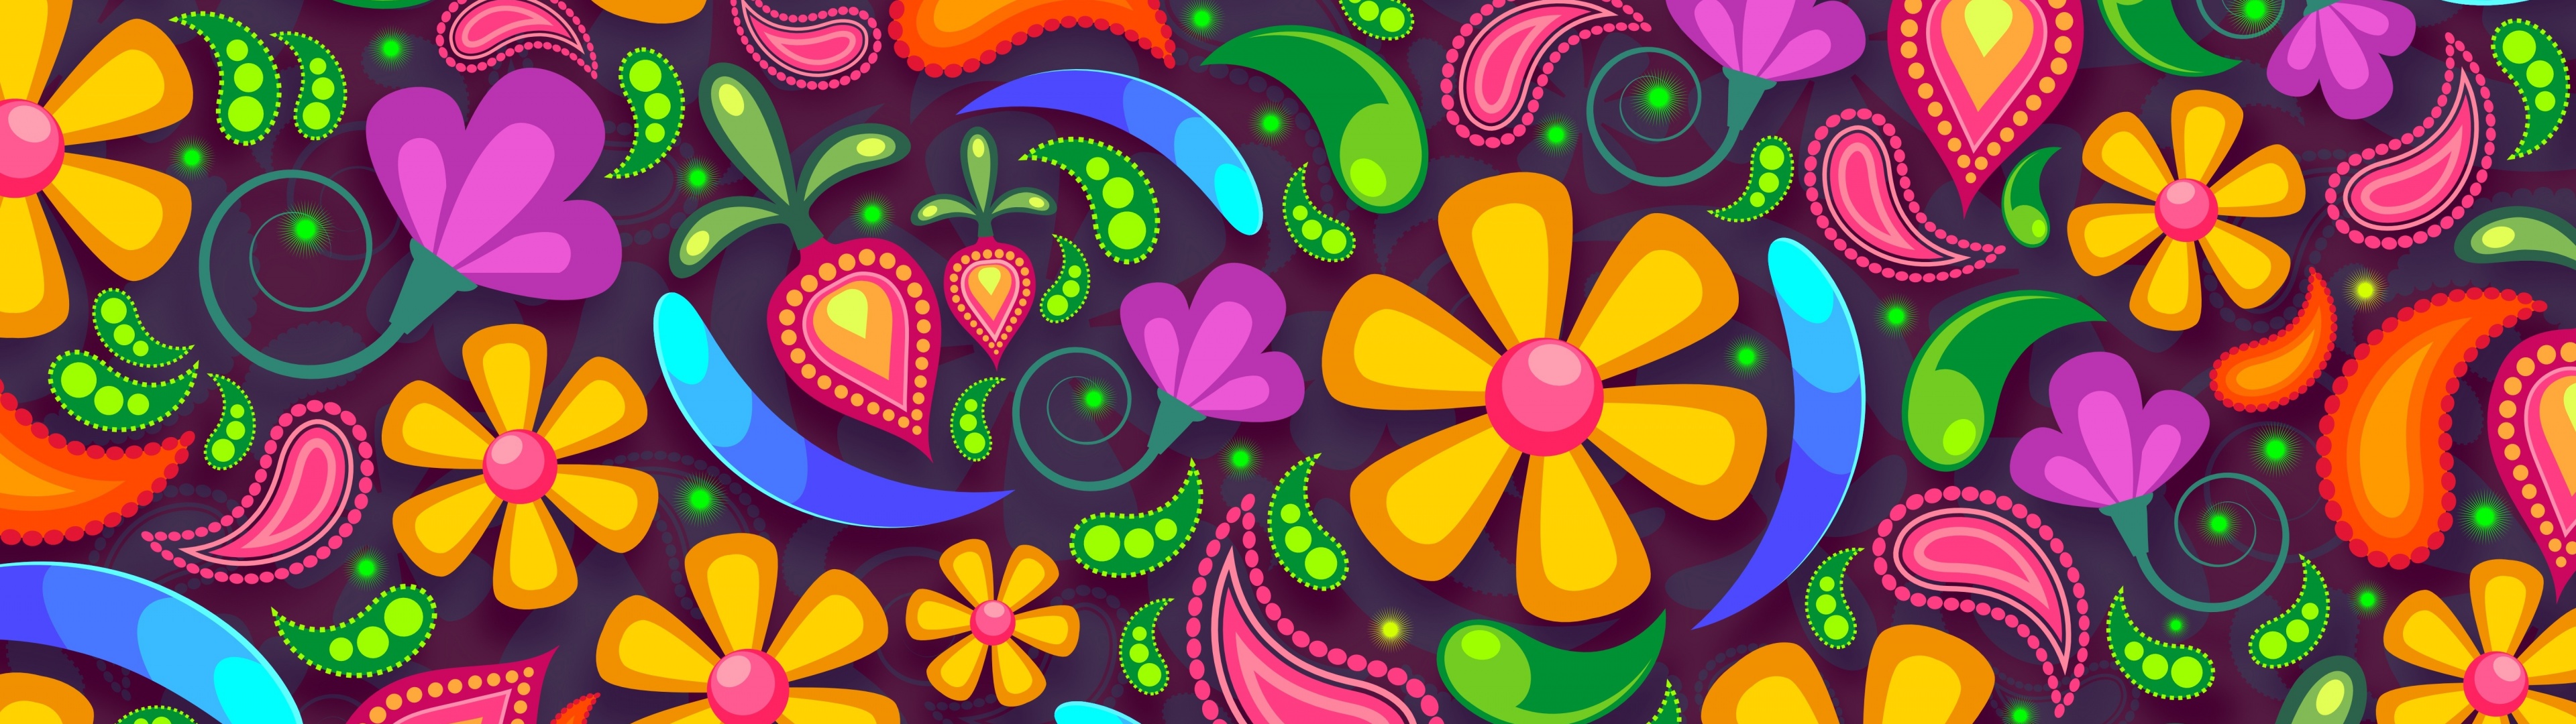 Floral designs Wallpaper 4K, Girly backgrounds, Digital Art